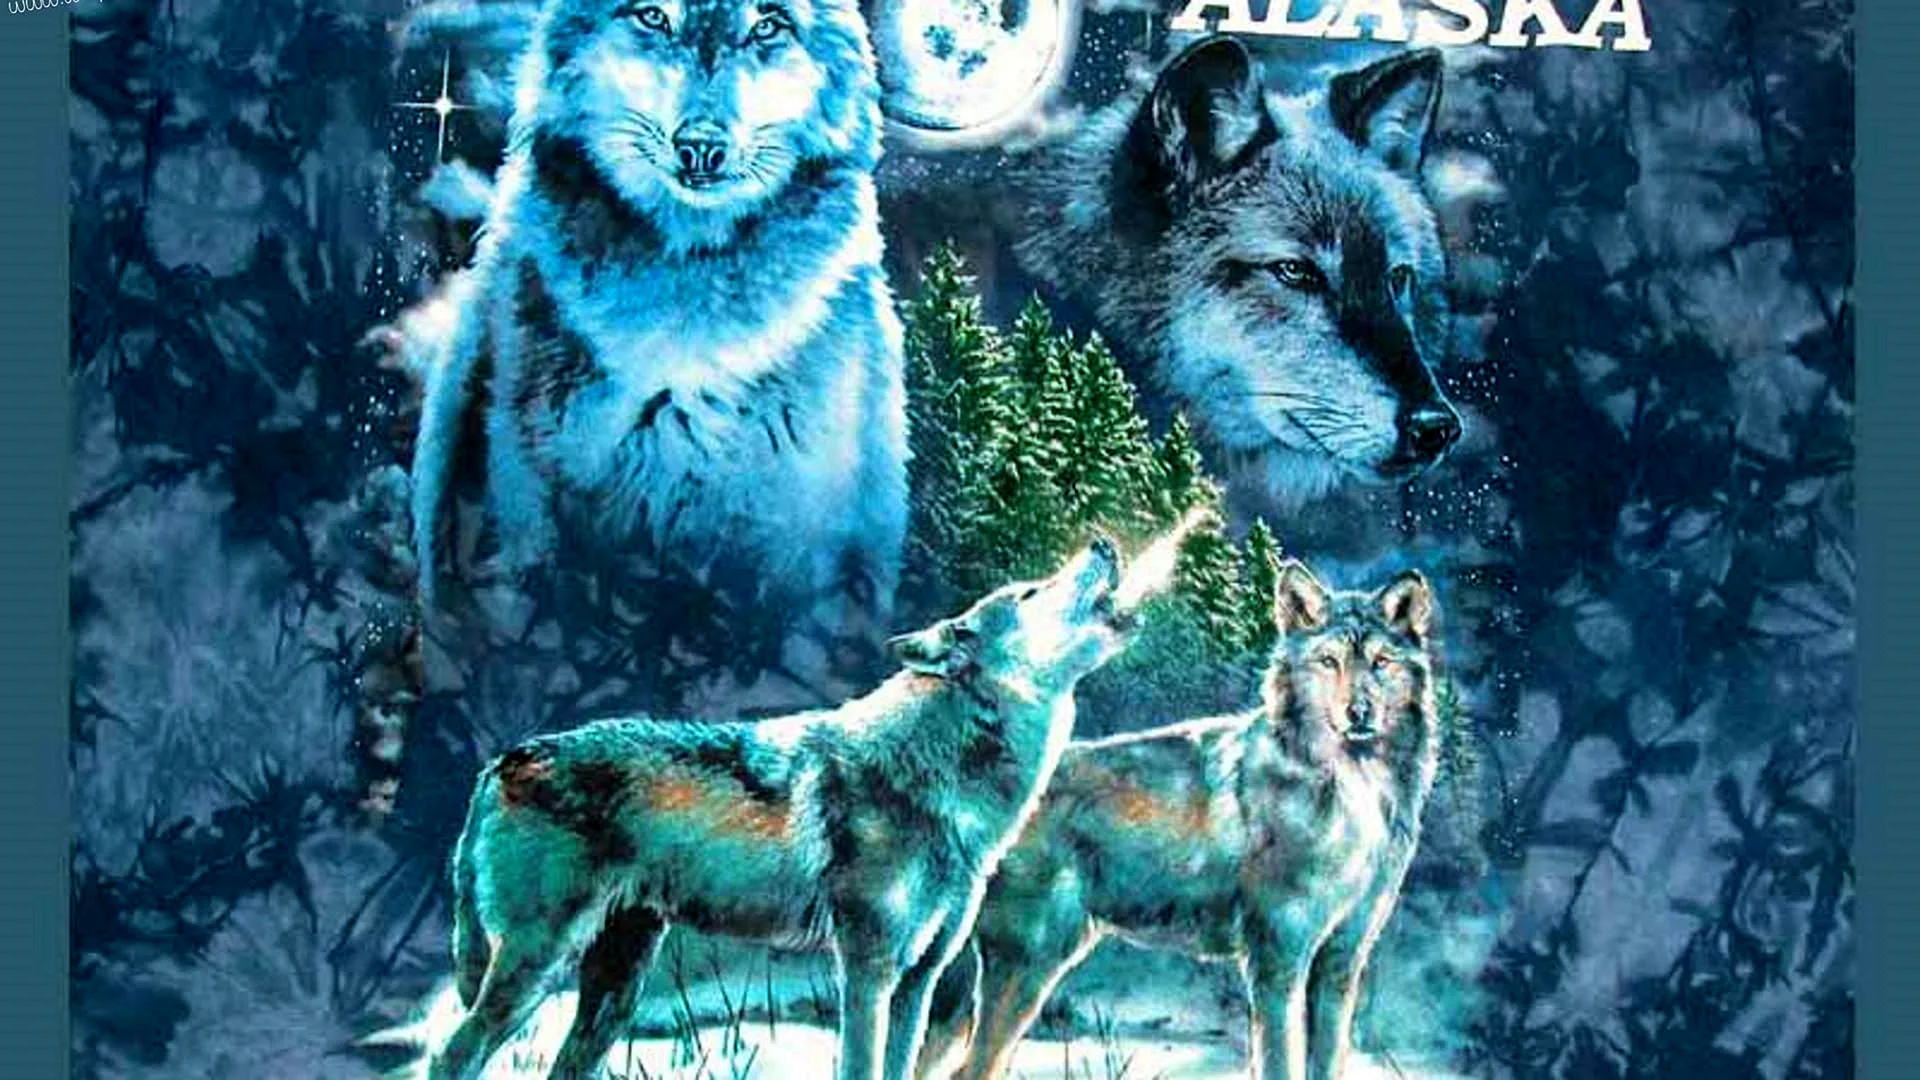 Blue Fire Wolf Wallpaper